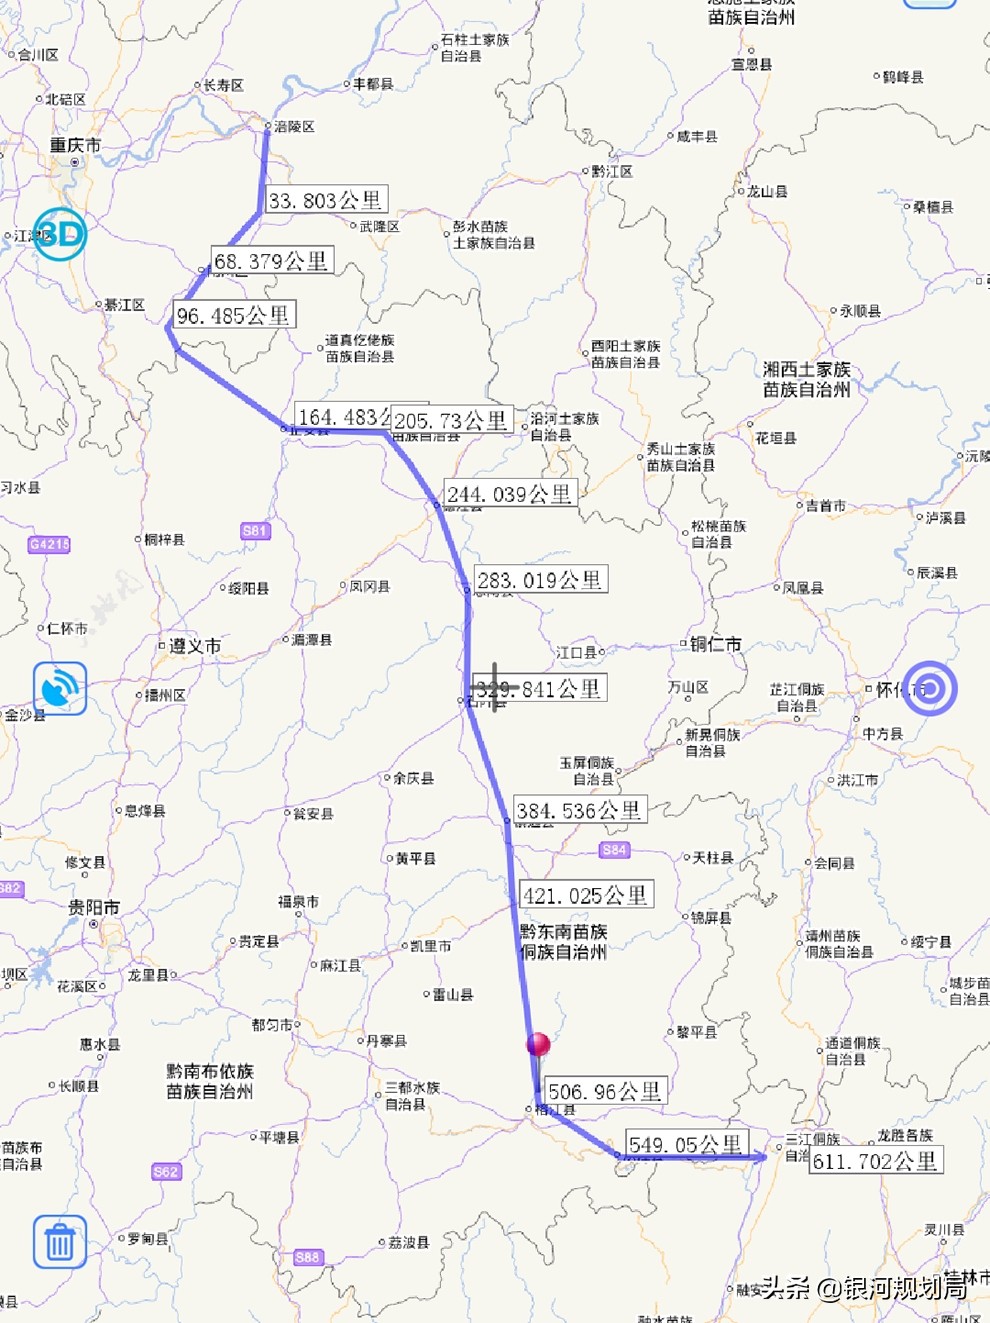 涪陵-柳州铁路